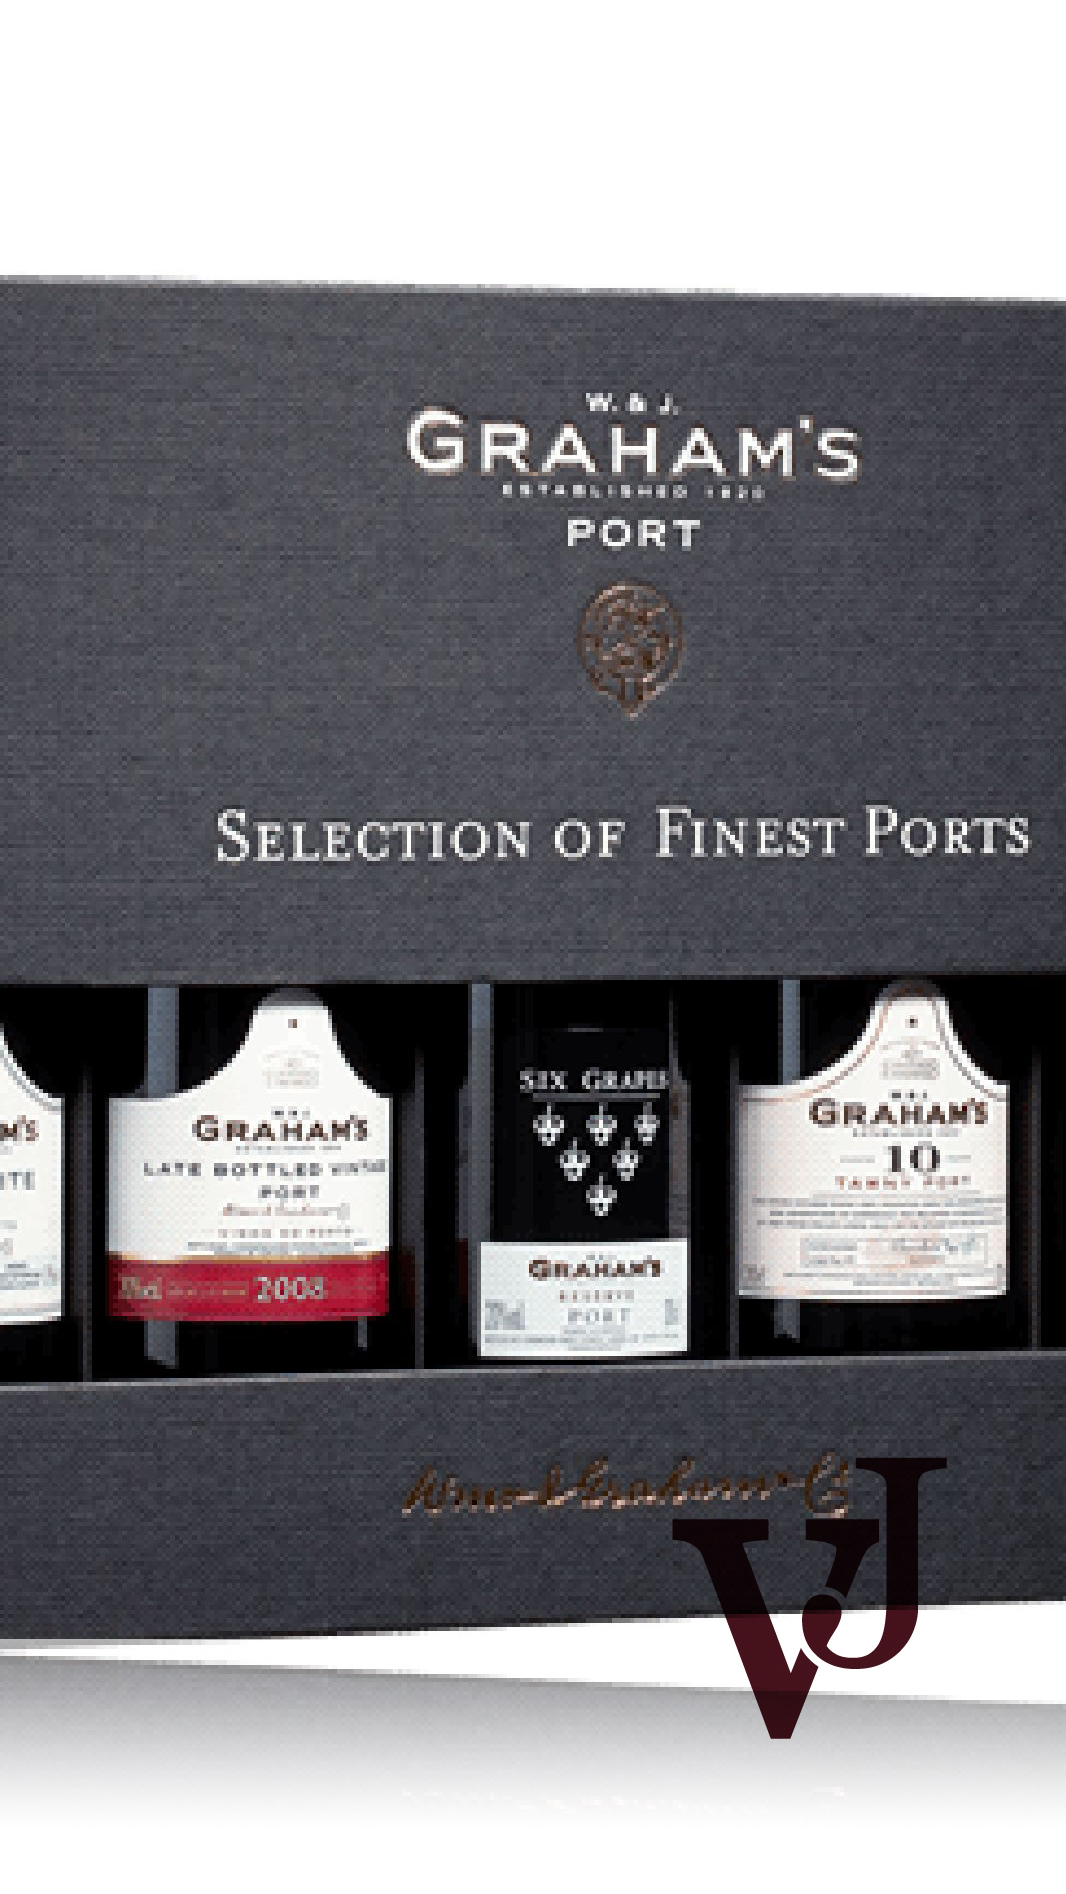 Starkvin - Graham's artikel nummer 806504 från producenten Graham's från området Portugal